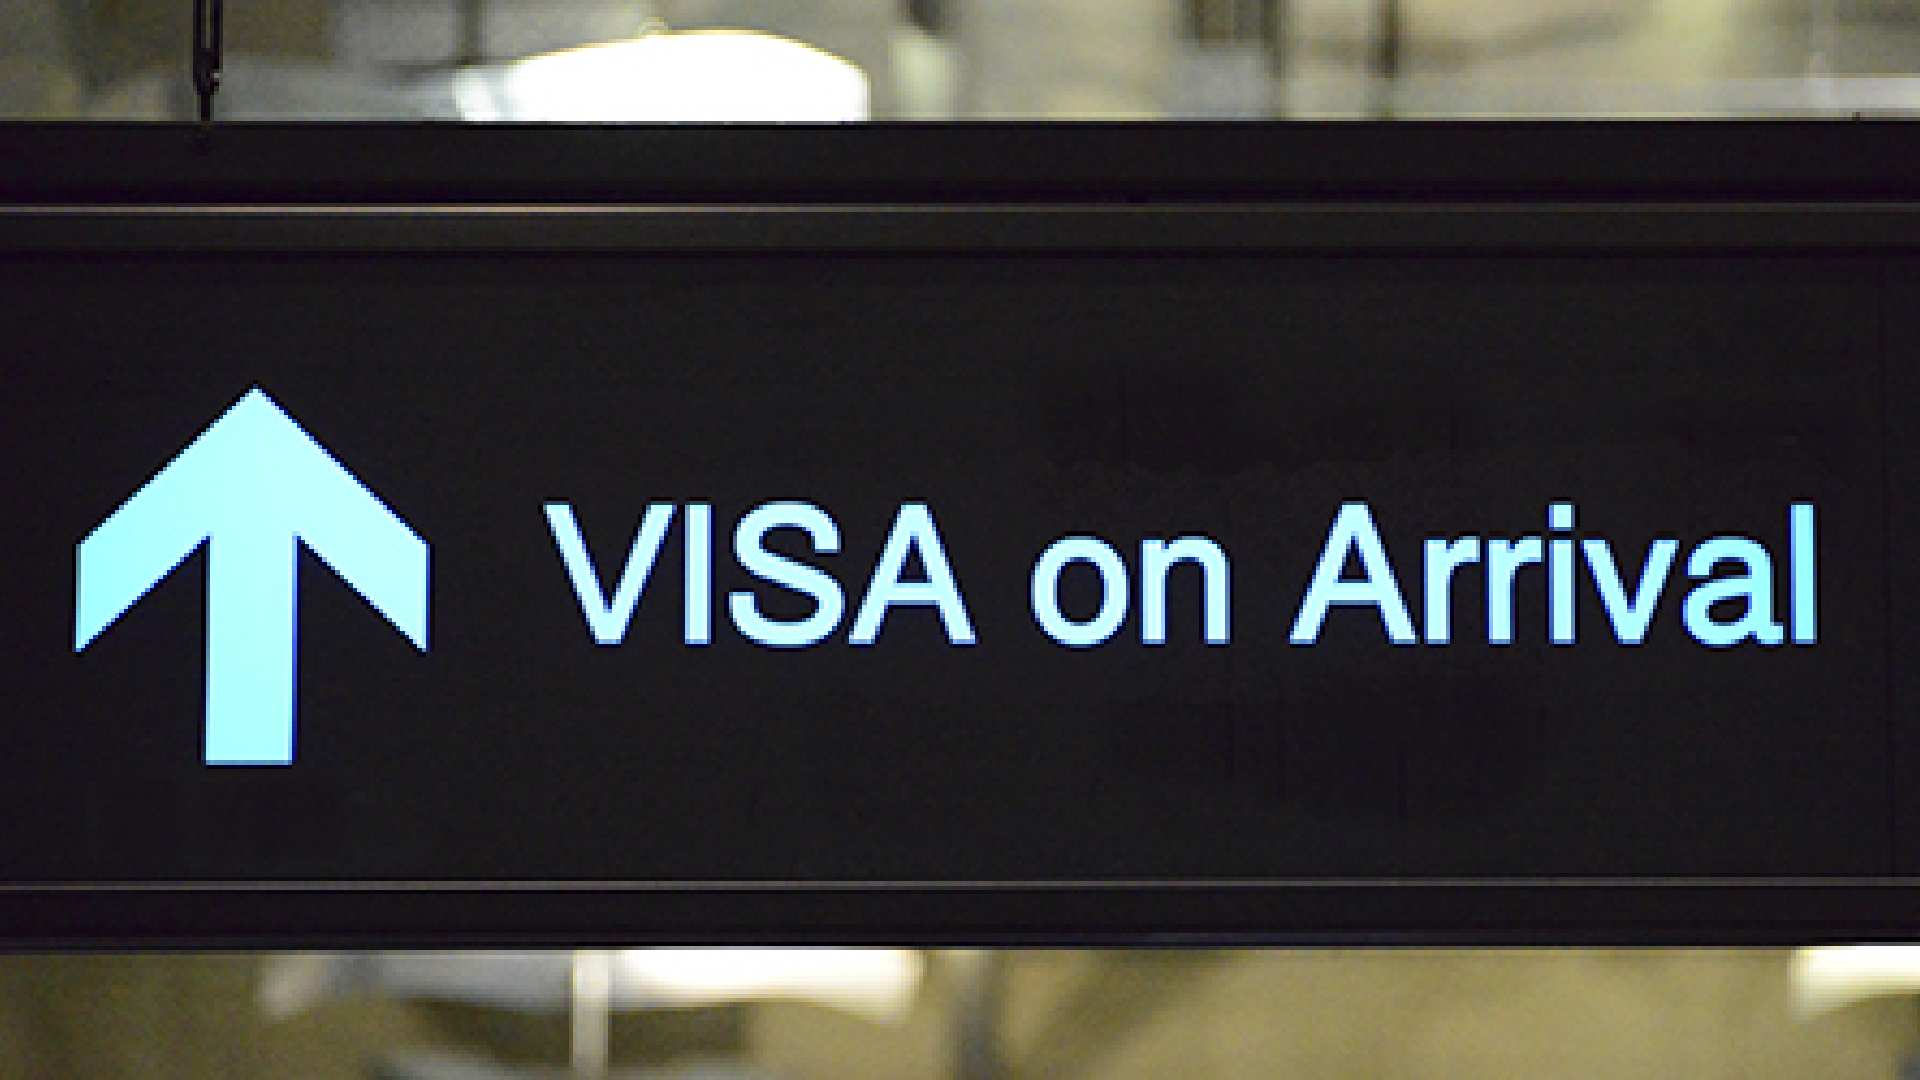 on arrival visa for uae residents 